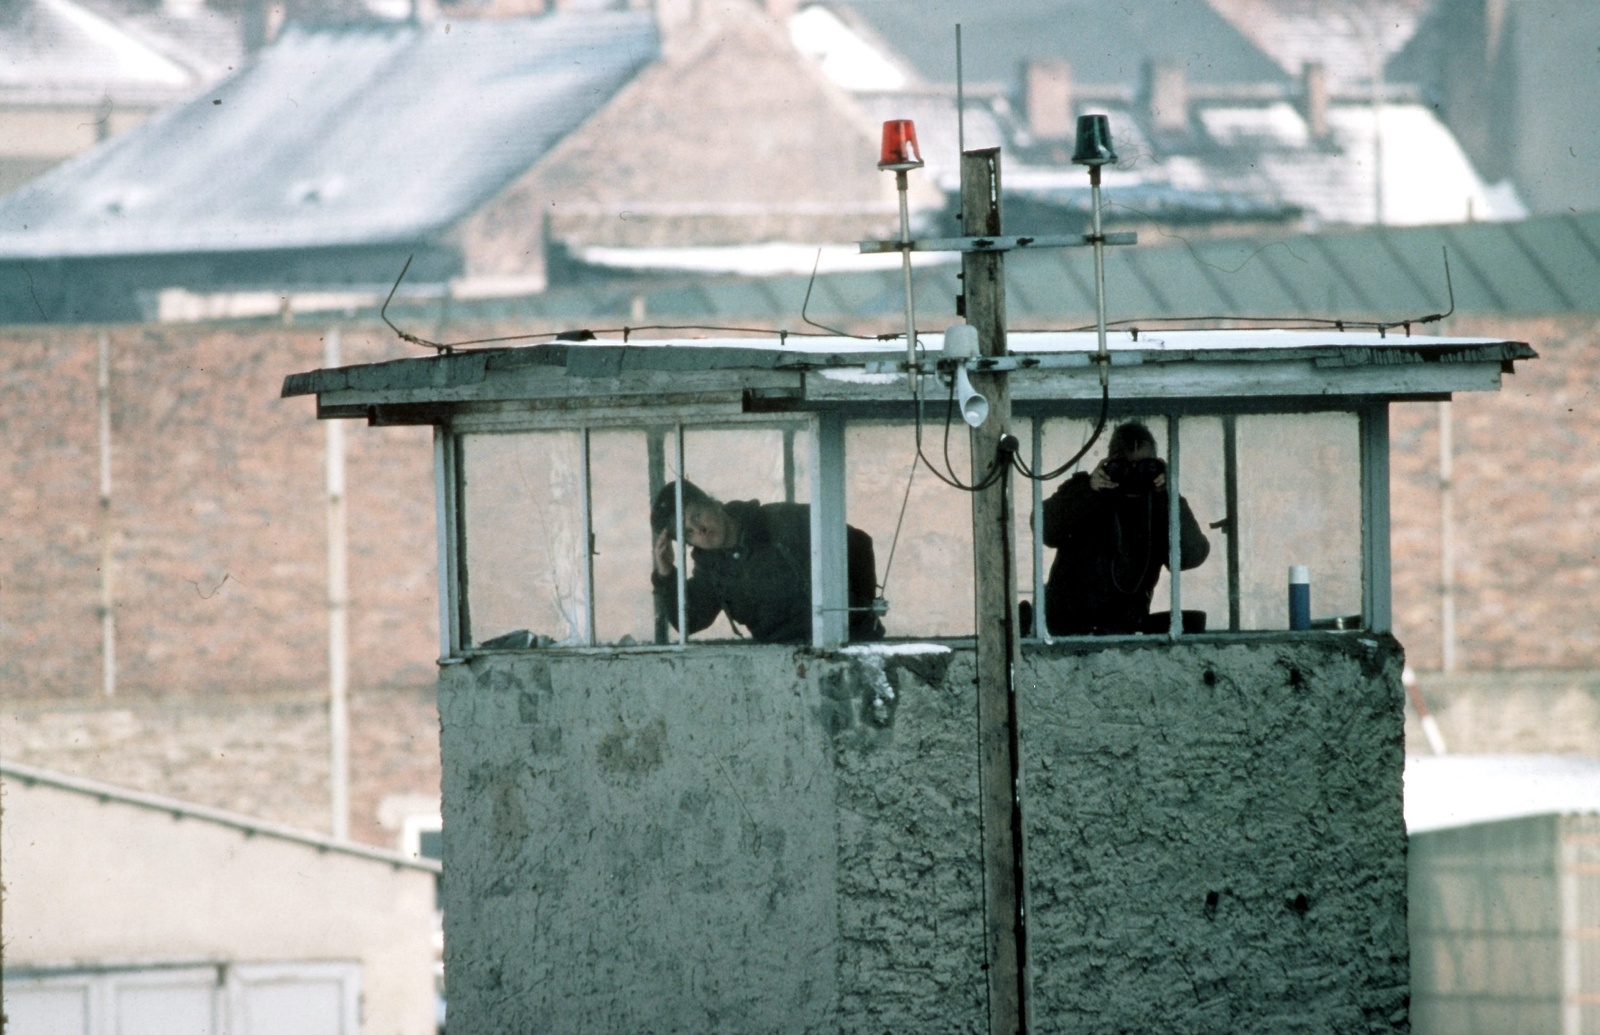 Ett enormt övervakningssystem upp. De som försökte fly var enligt DDR:s lagar kriminella.